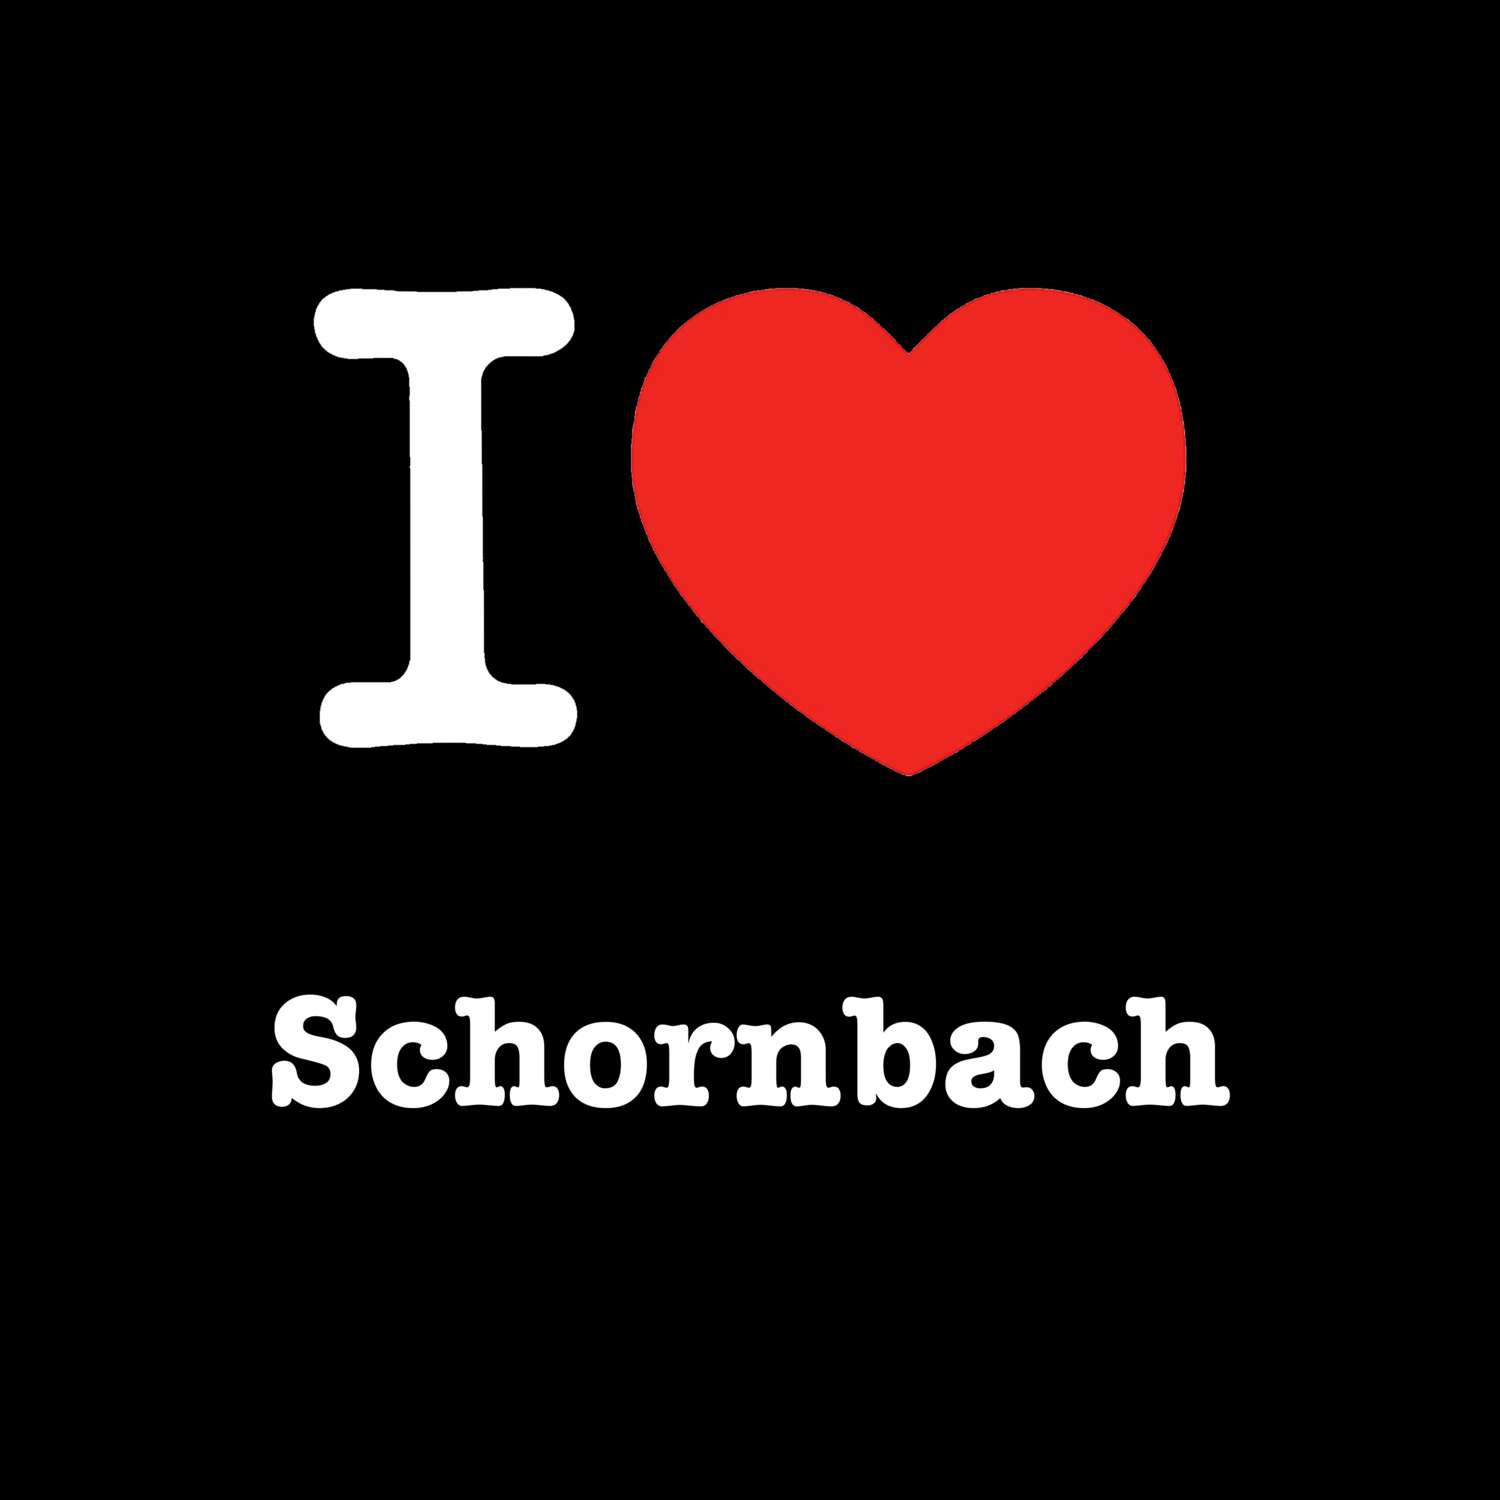 Schornbach T-Shirt »I love«